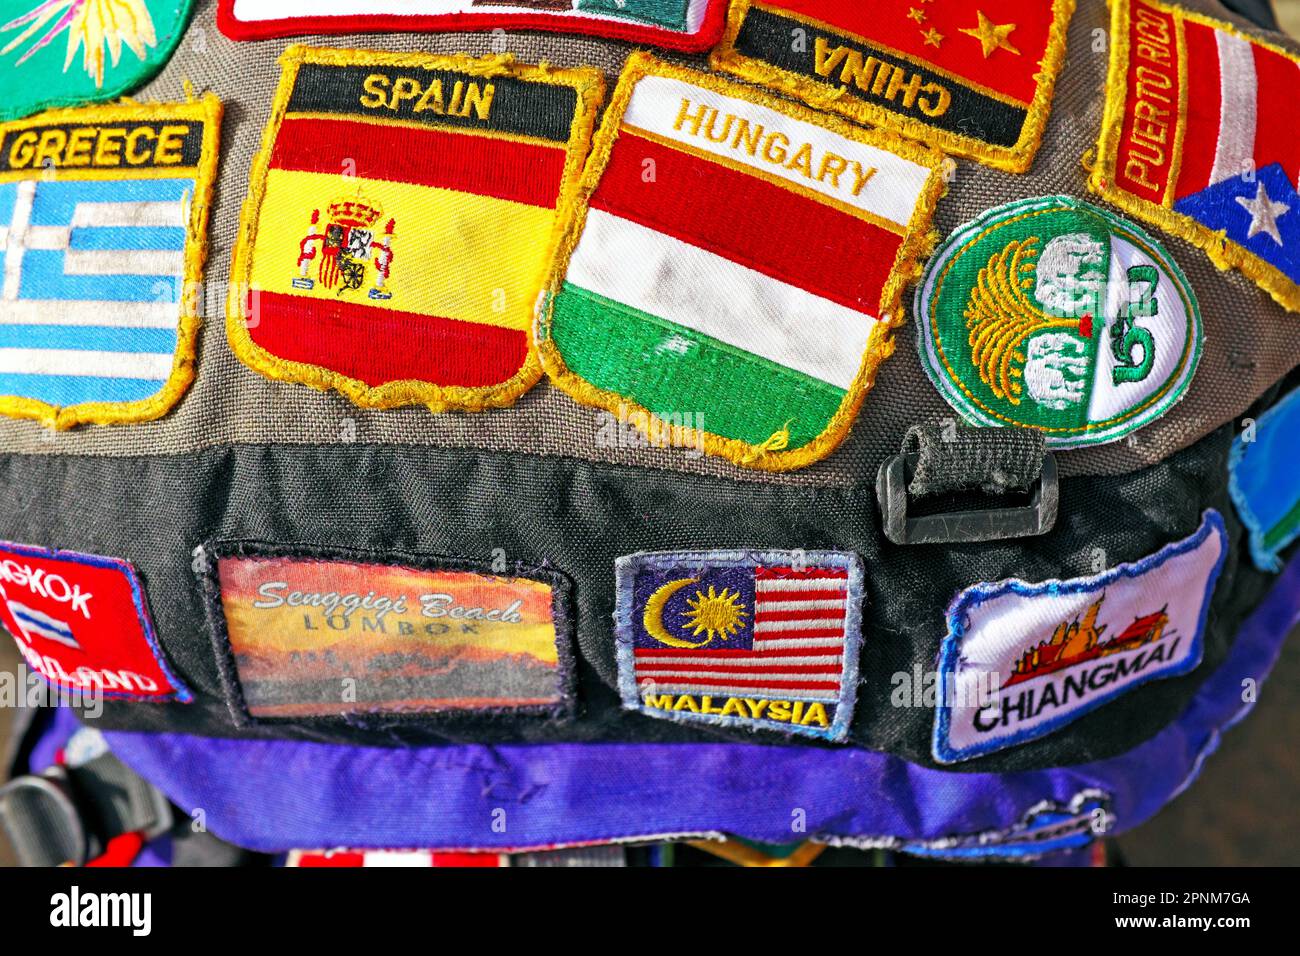 Le haut d'un sac à dos de voyage autonome couvert en cousu sur des patchs identifiant les destinations visitées. Les patchs sont une forme d'identité pour le routard. Les correctifs incluent des destinations en provenance d'Europe, d'Asie et des Caraïbes. Banque D'Images